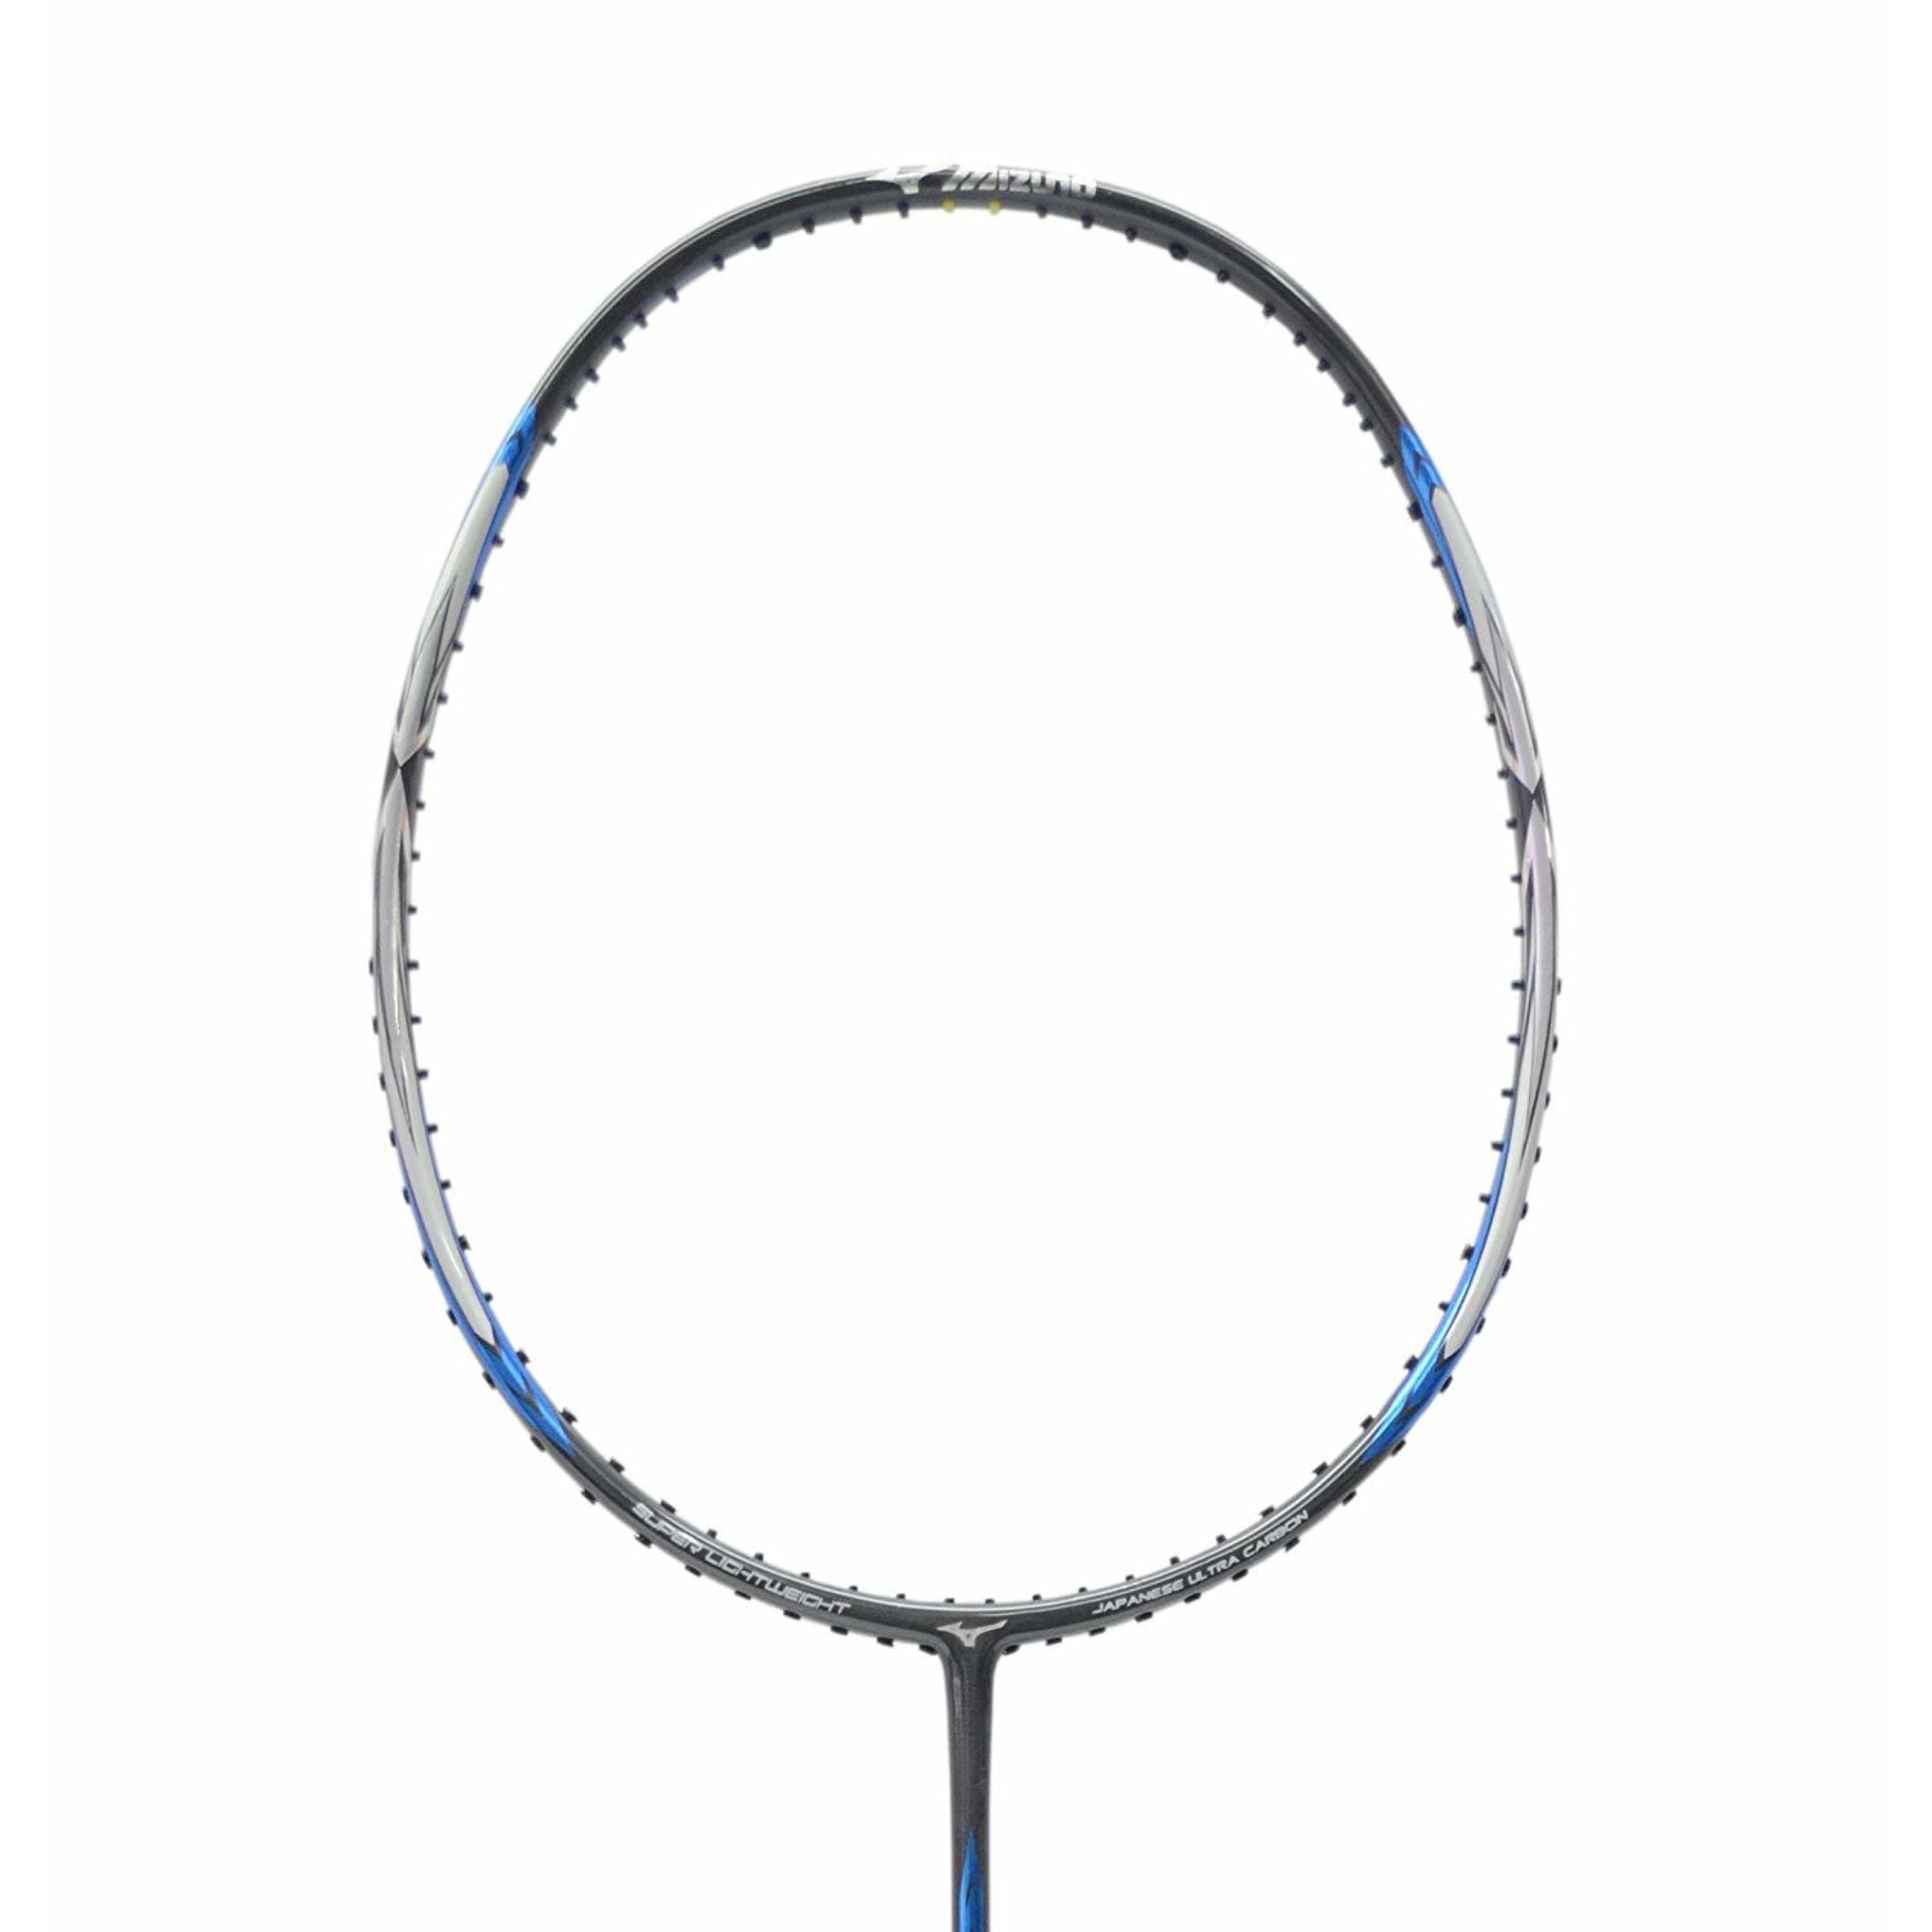 Mizuno Dynalite 58 Badminton Racket